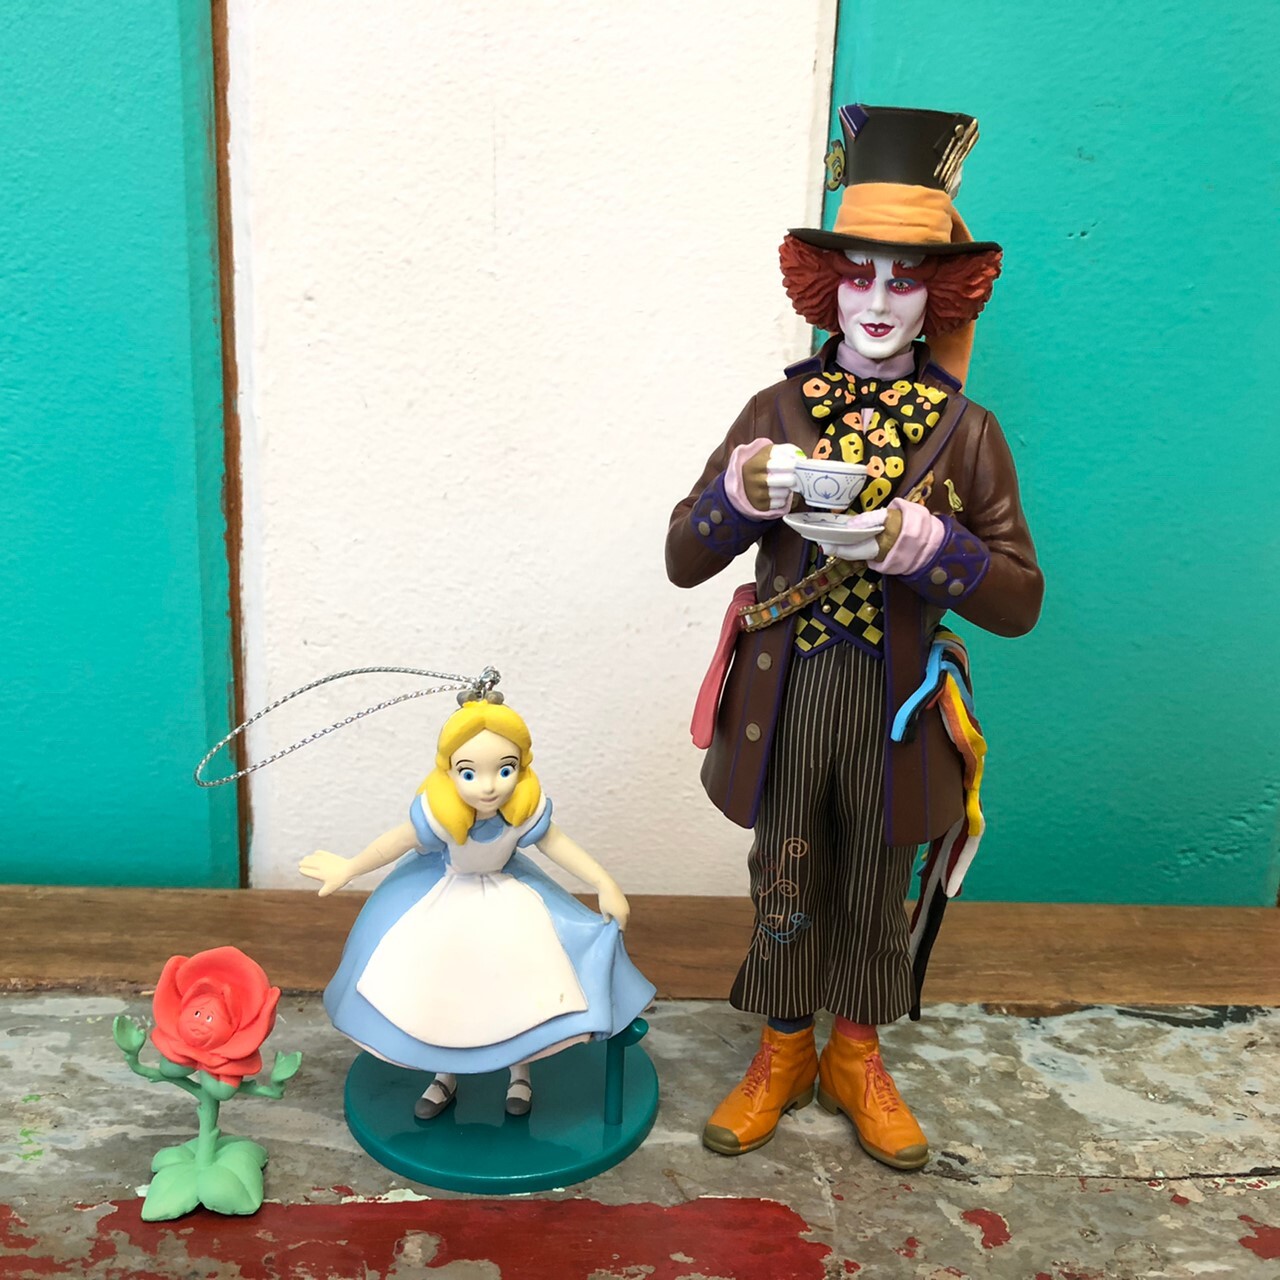 Disney Alice In Wonderland The Hatter Figure アリス イン ワンダーランド マッドハッター 帽子屋 フィギュア The Puppez E Shop ザ パペッツ松本 Webショップ